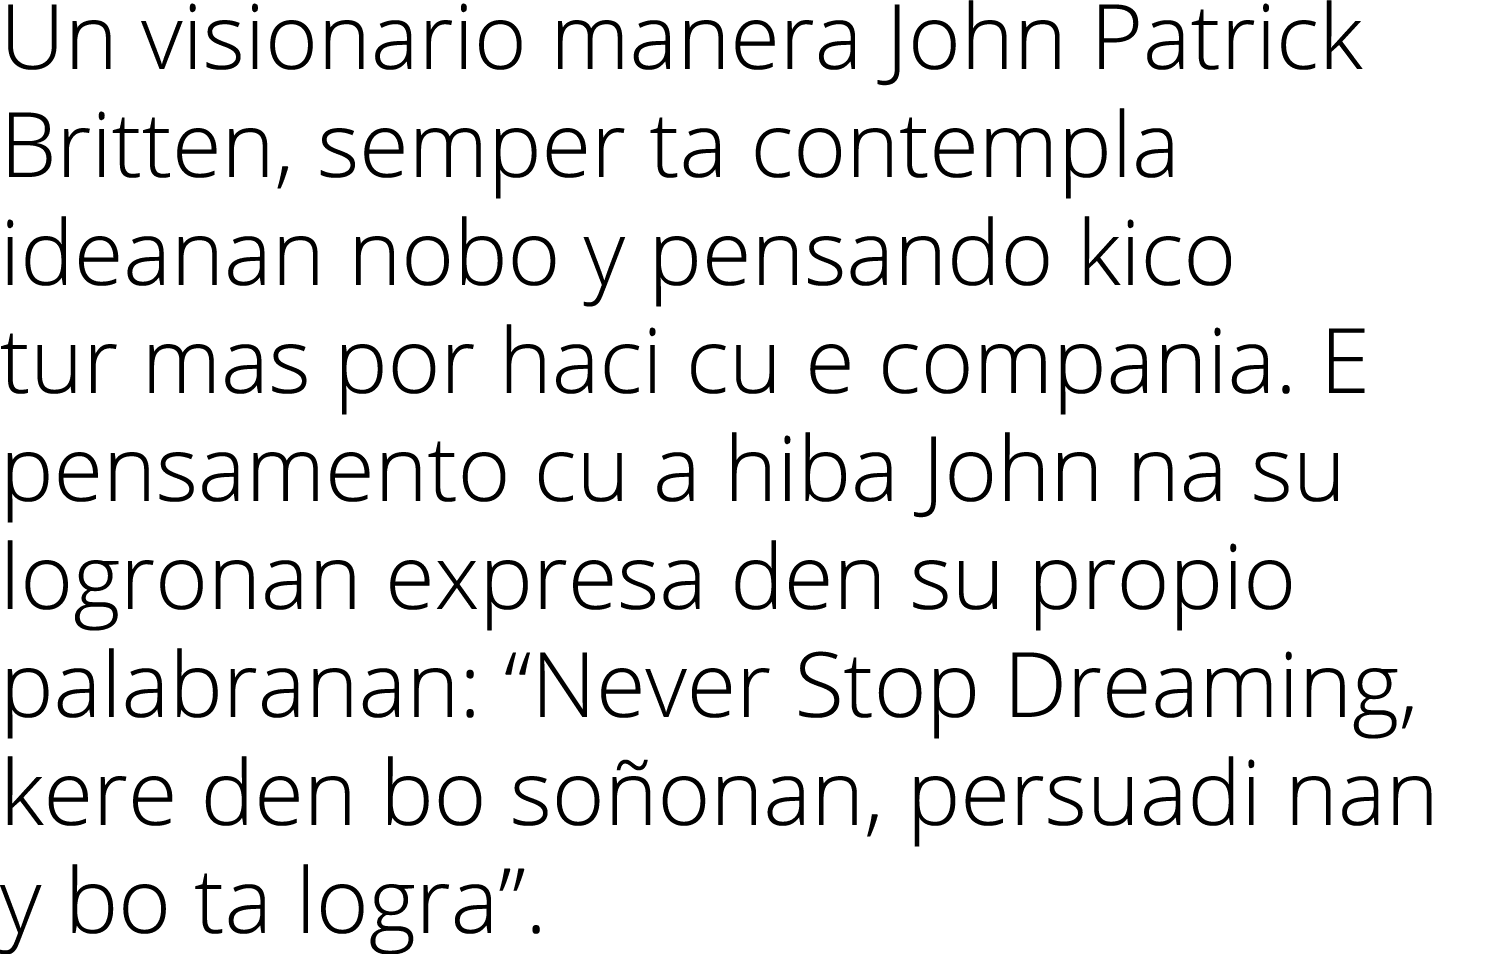 Un visionario manera John Patrick Britten, semper ta contempla ideanan nobo y pensando kico tur mas por haci cu e com...